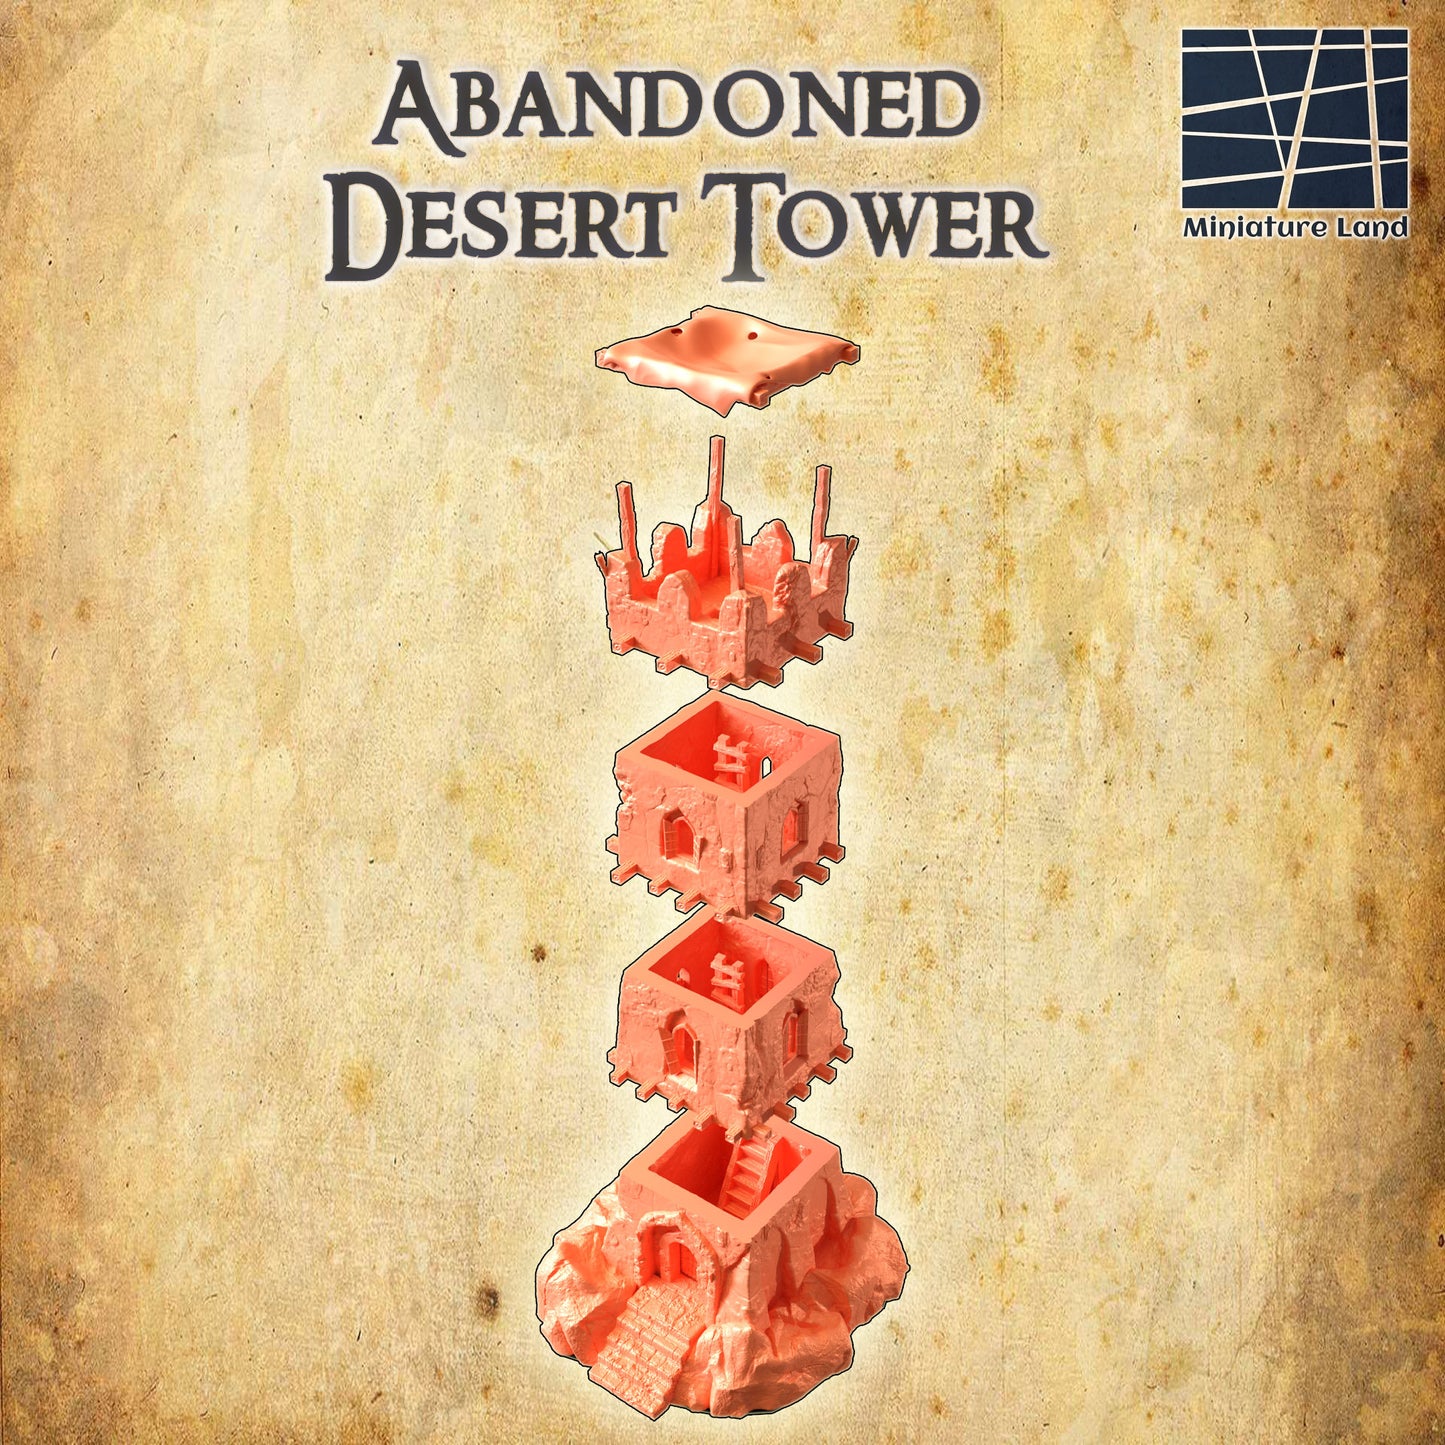 Desert Tower Ruin, Abandoned Desert Tower, 28mm, DnD Terrain